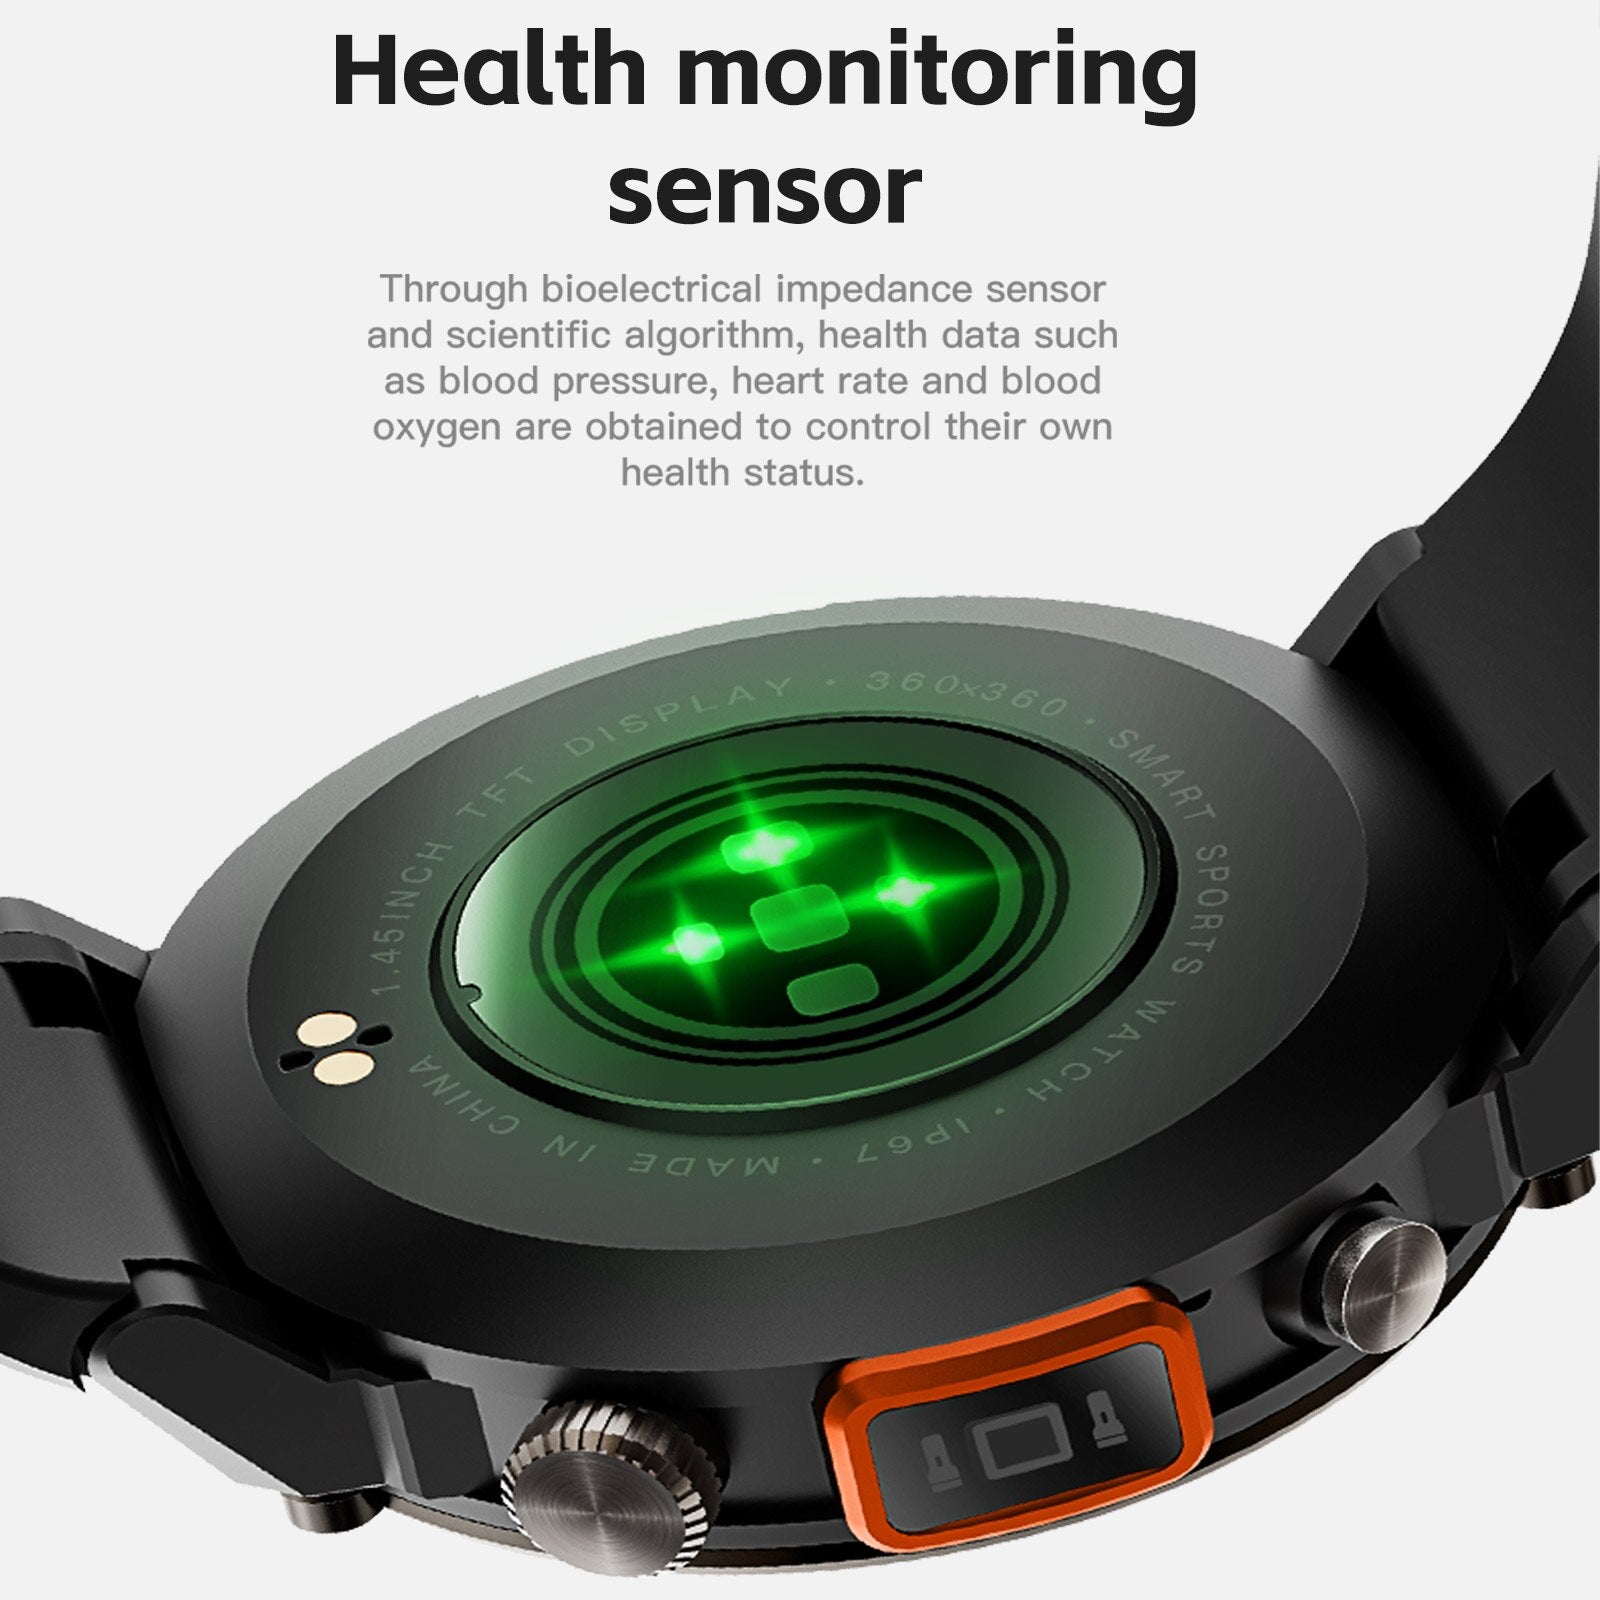 EIGIIS Bluetooth Call Smart Watch Men Full Touch Screen Health